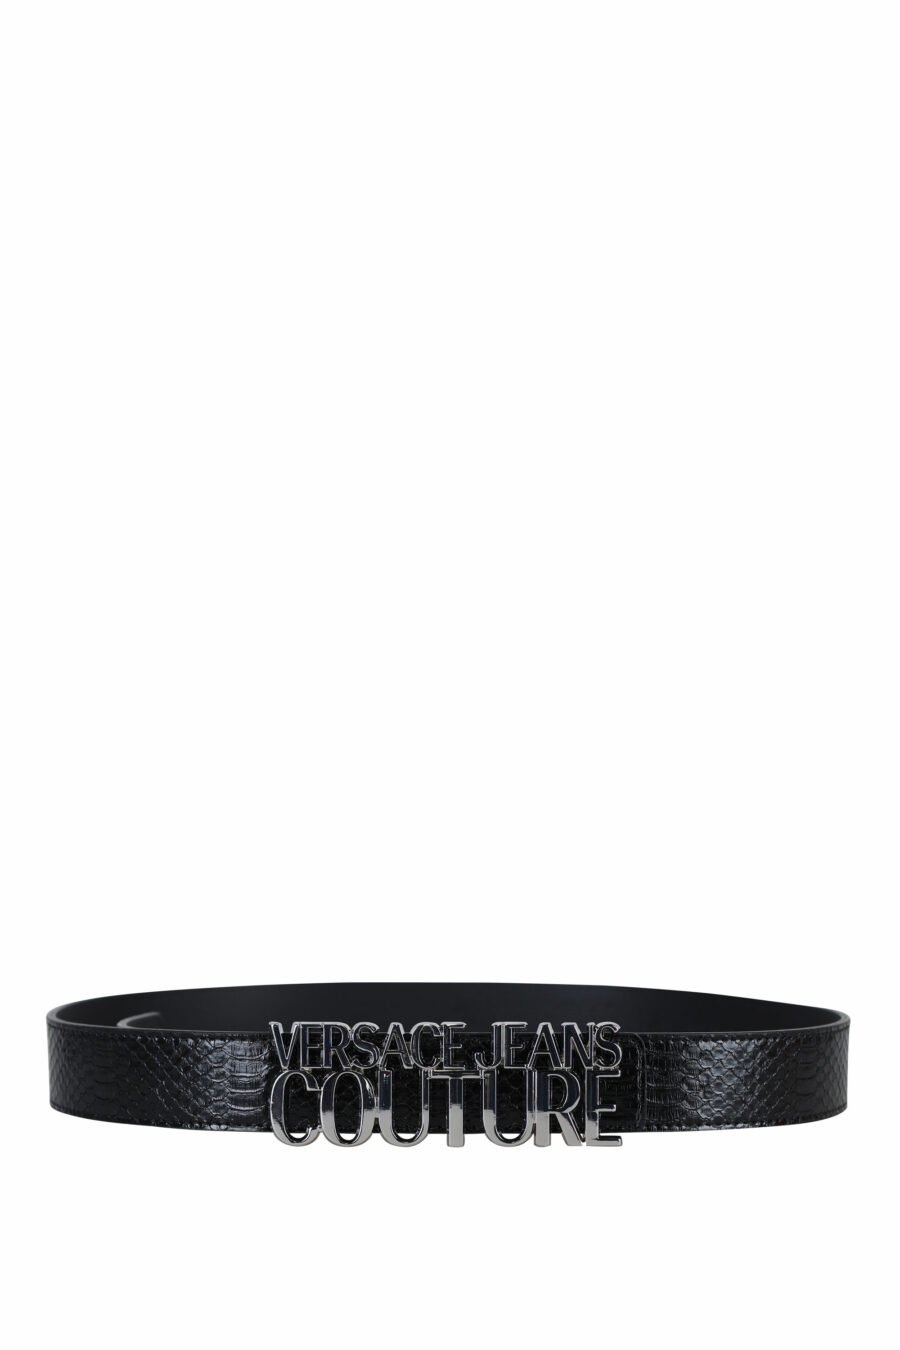 Cinturón negro con textura de serpiente y logo "lettering" plateado - 8052019479959